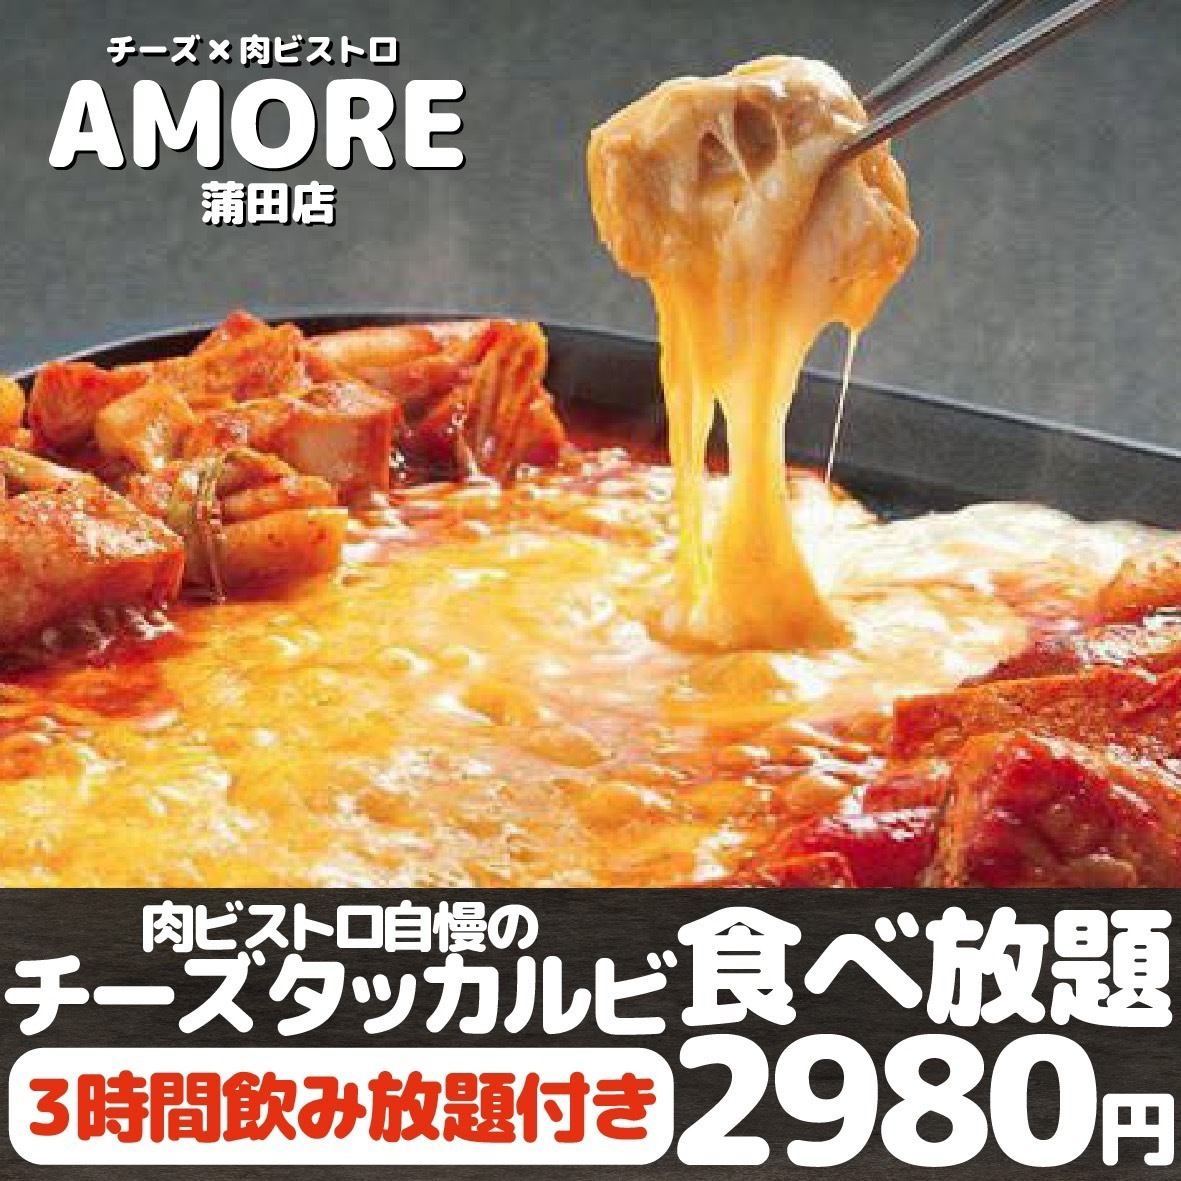 【食べ放題】3時間食べ飲み放題チーズタッカルビコース♪2480円